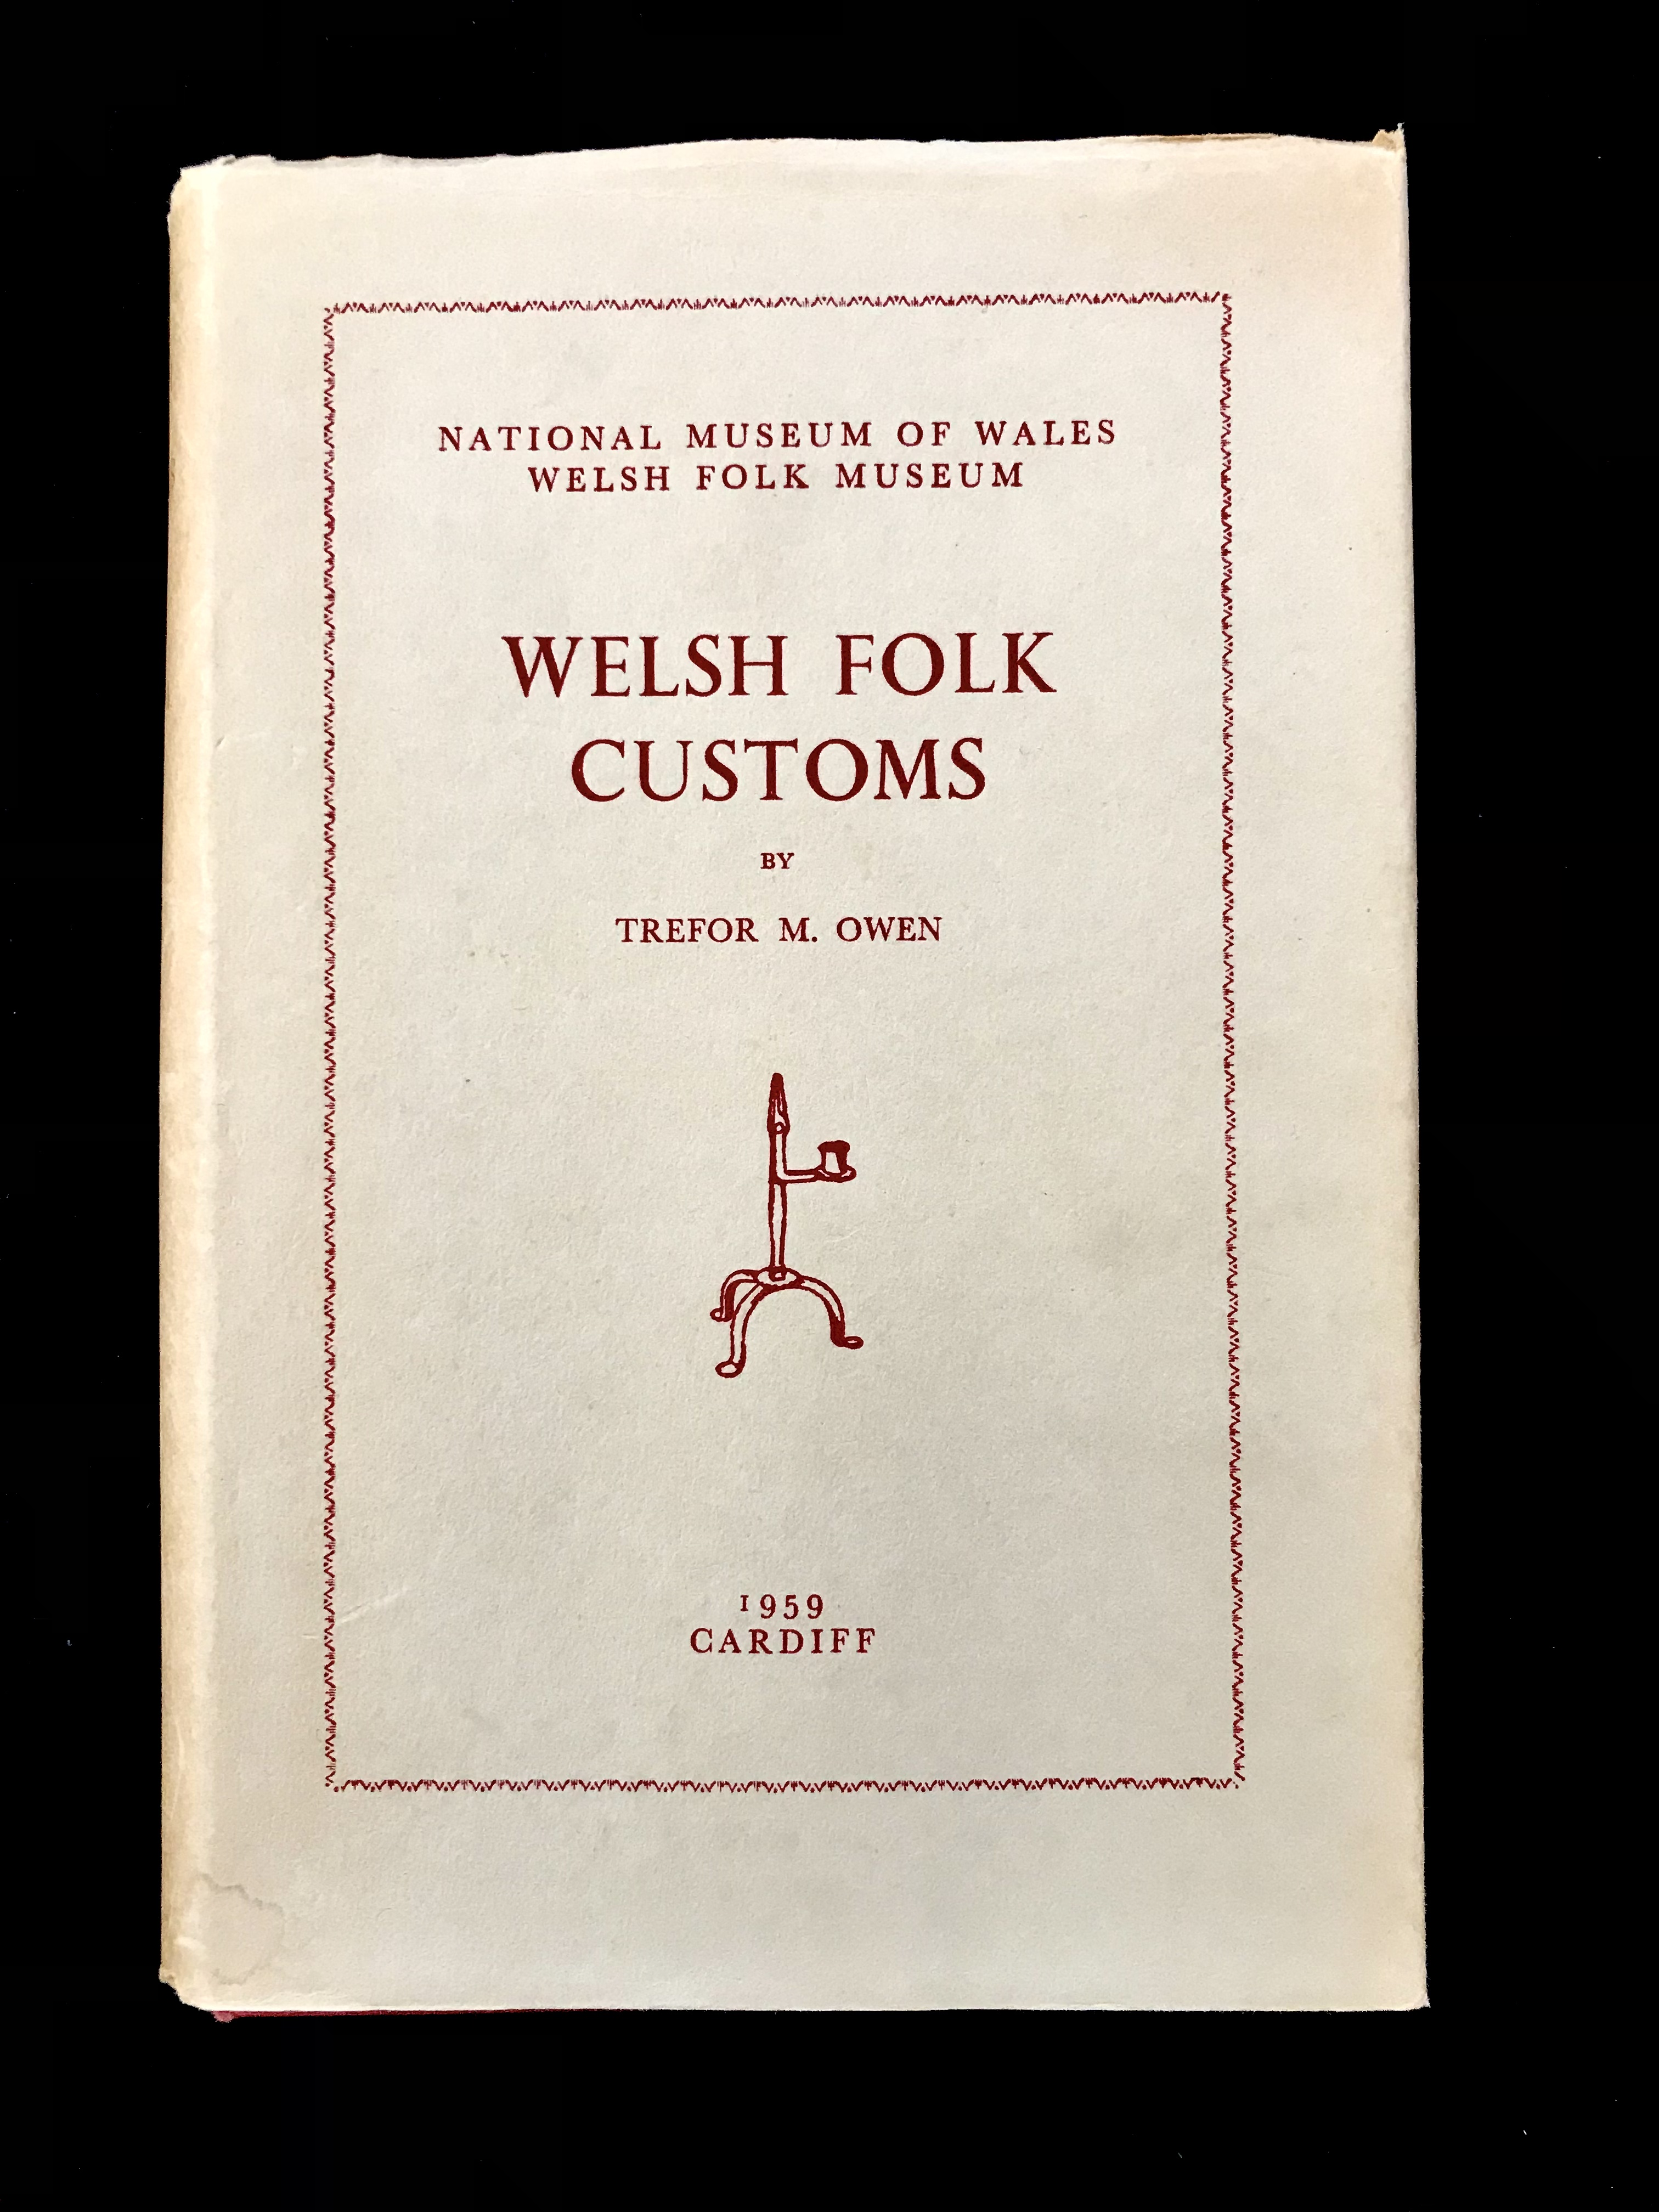 Welsh Folk Customs by Tredor M. Owen